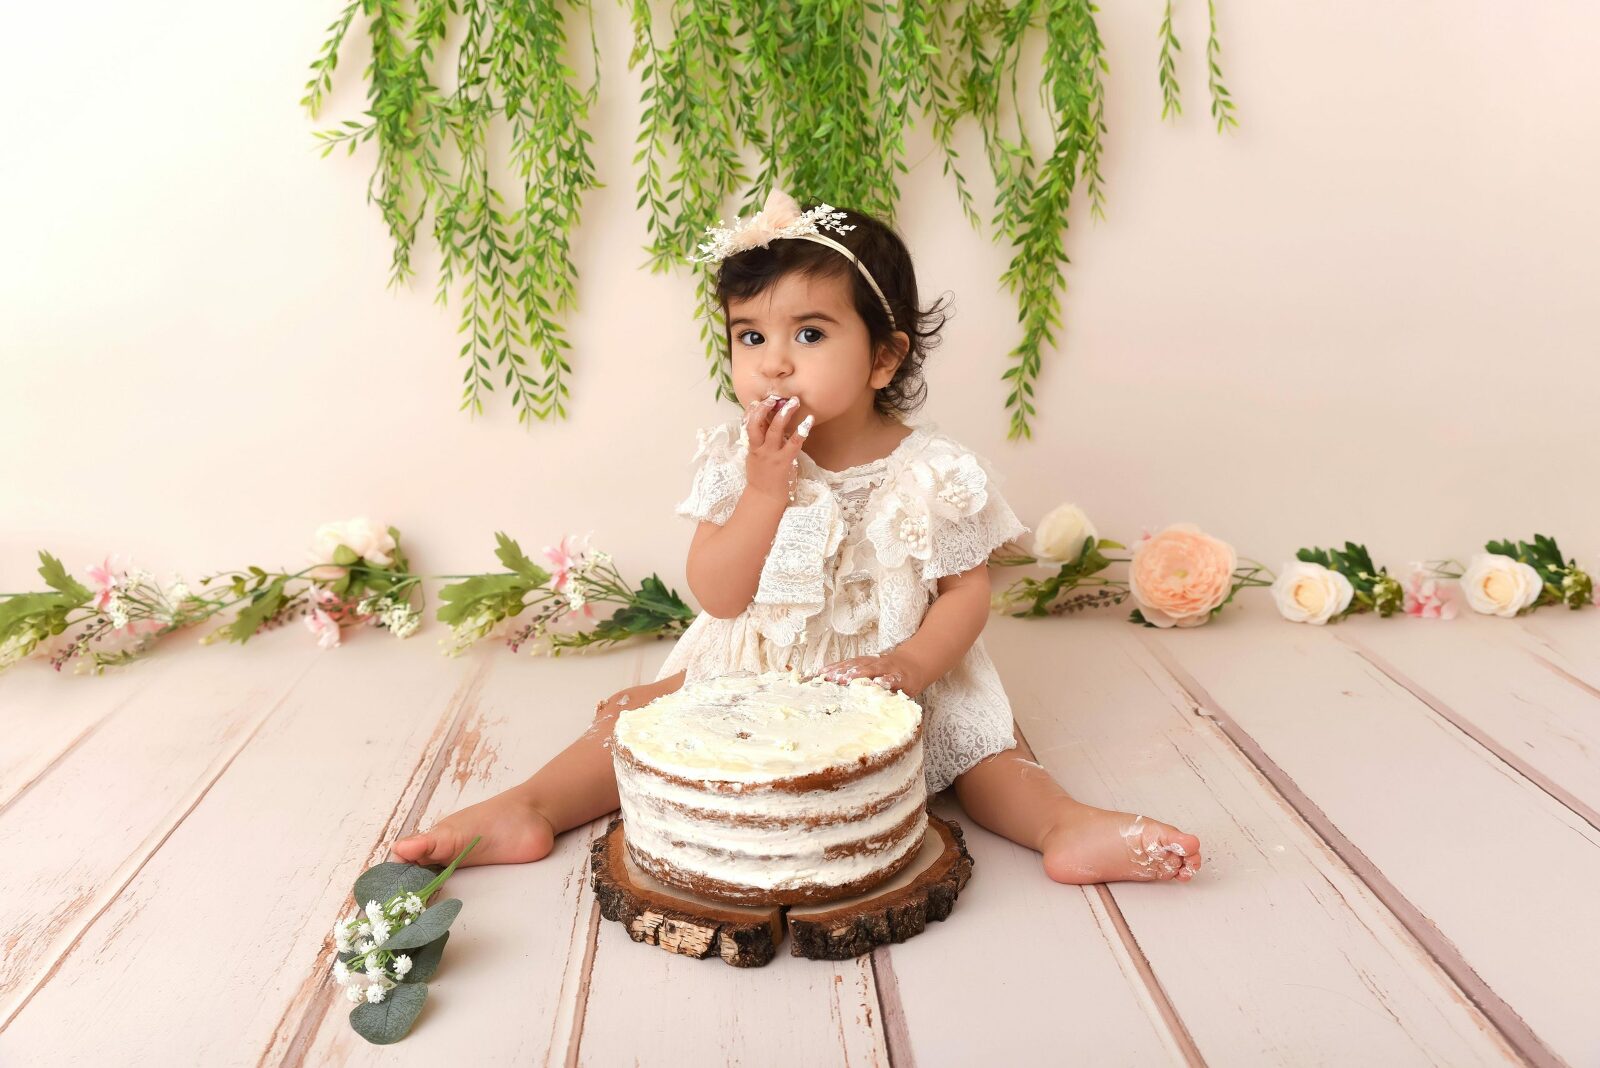 Bébé mangeant un gâteau à la crème